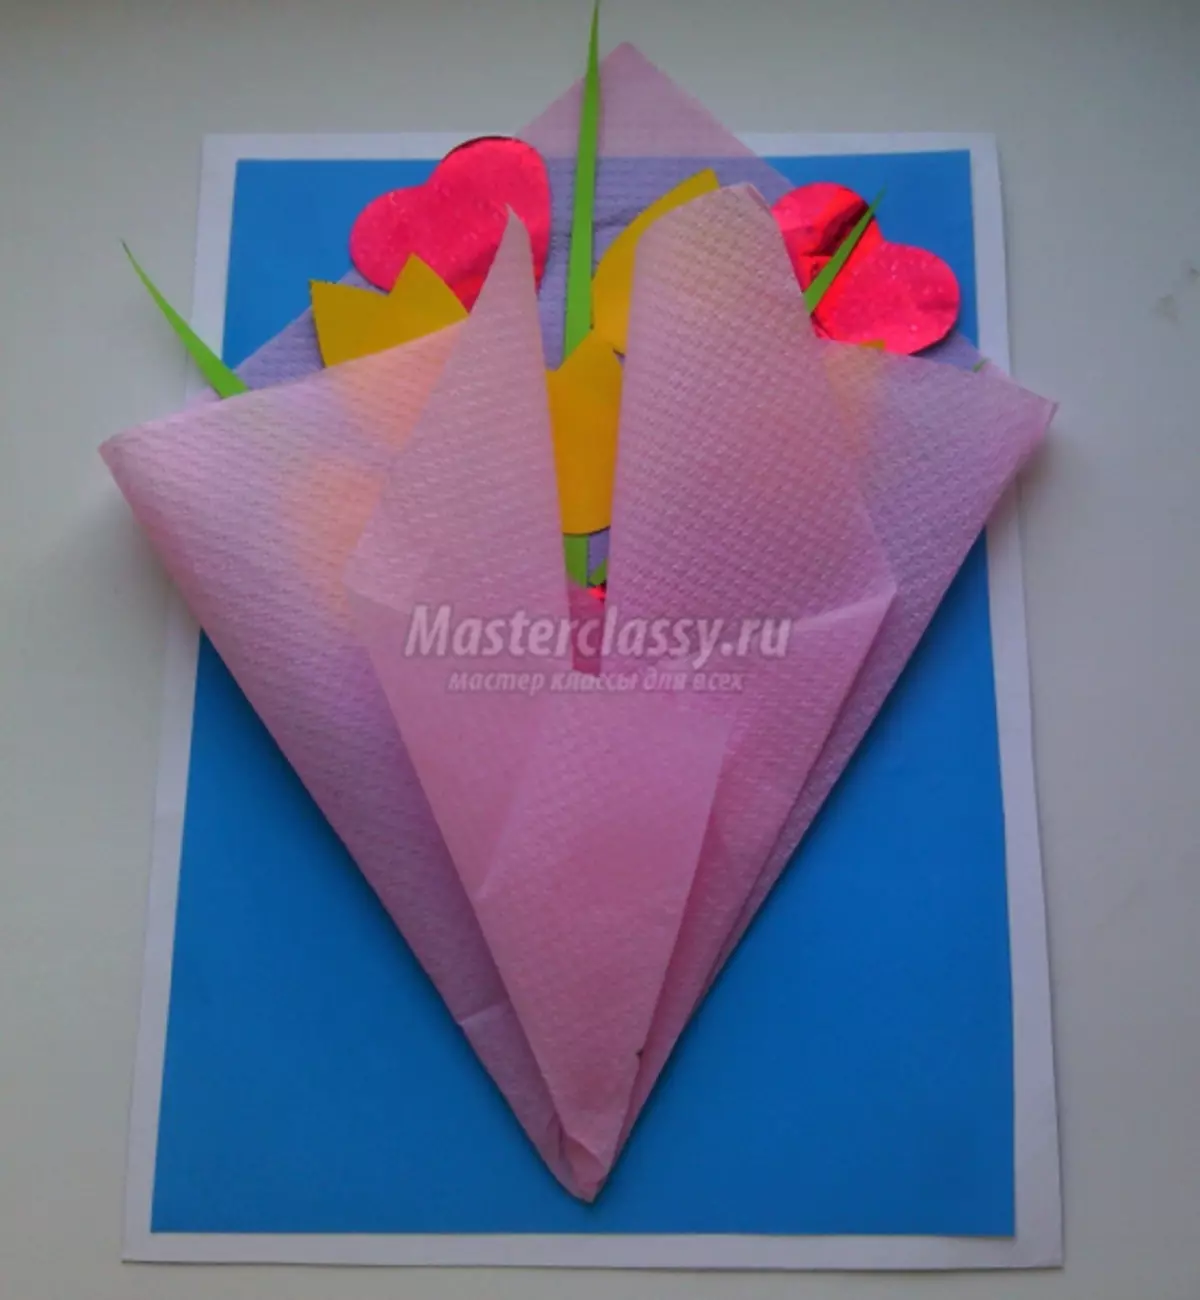 3月8日までに花を持つバルク紙カードを作る方法